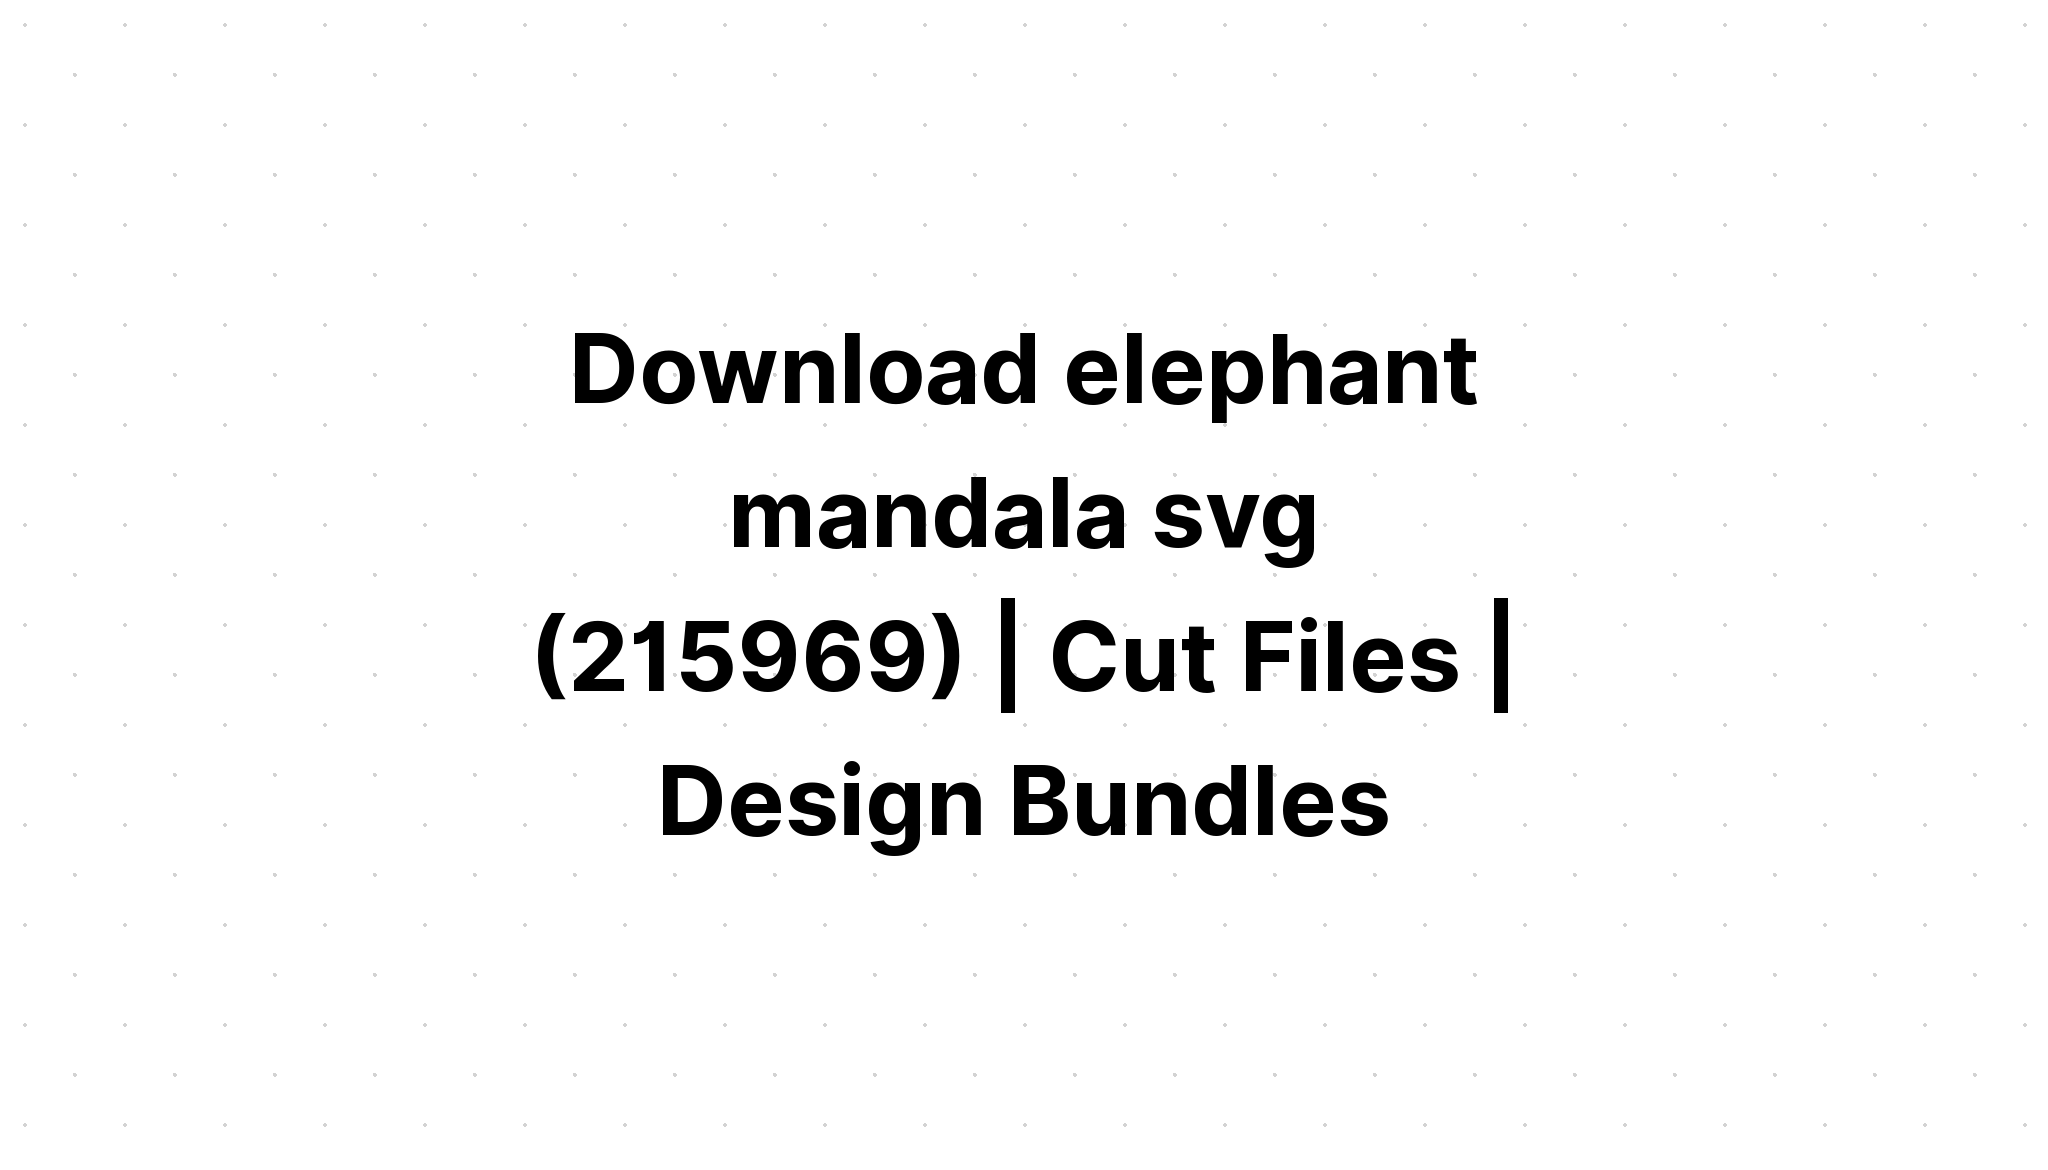 Download Layered Mandala Elephant Svg Free - Layered SVG Cut File